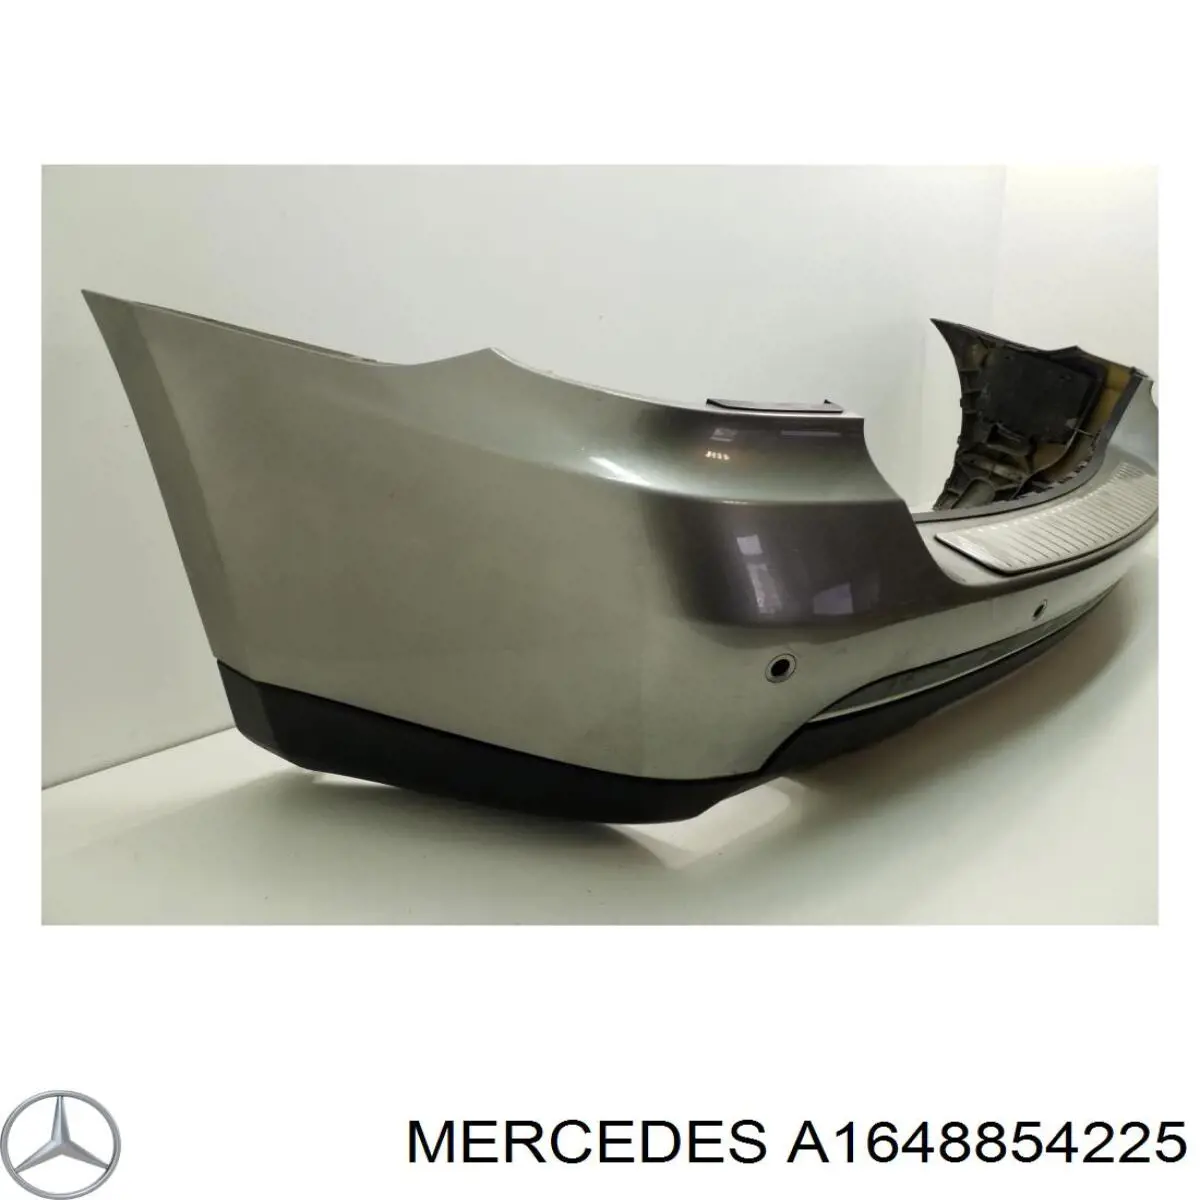 16488542259999 Mercedes parachoques trasero